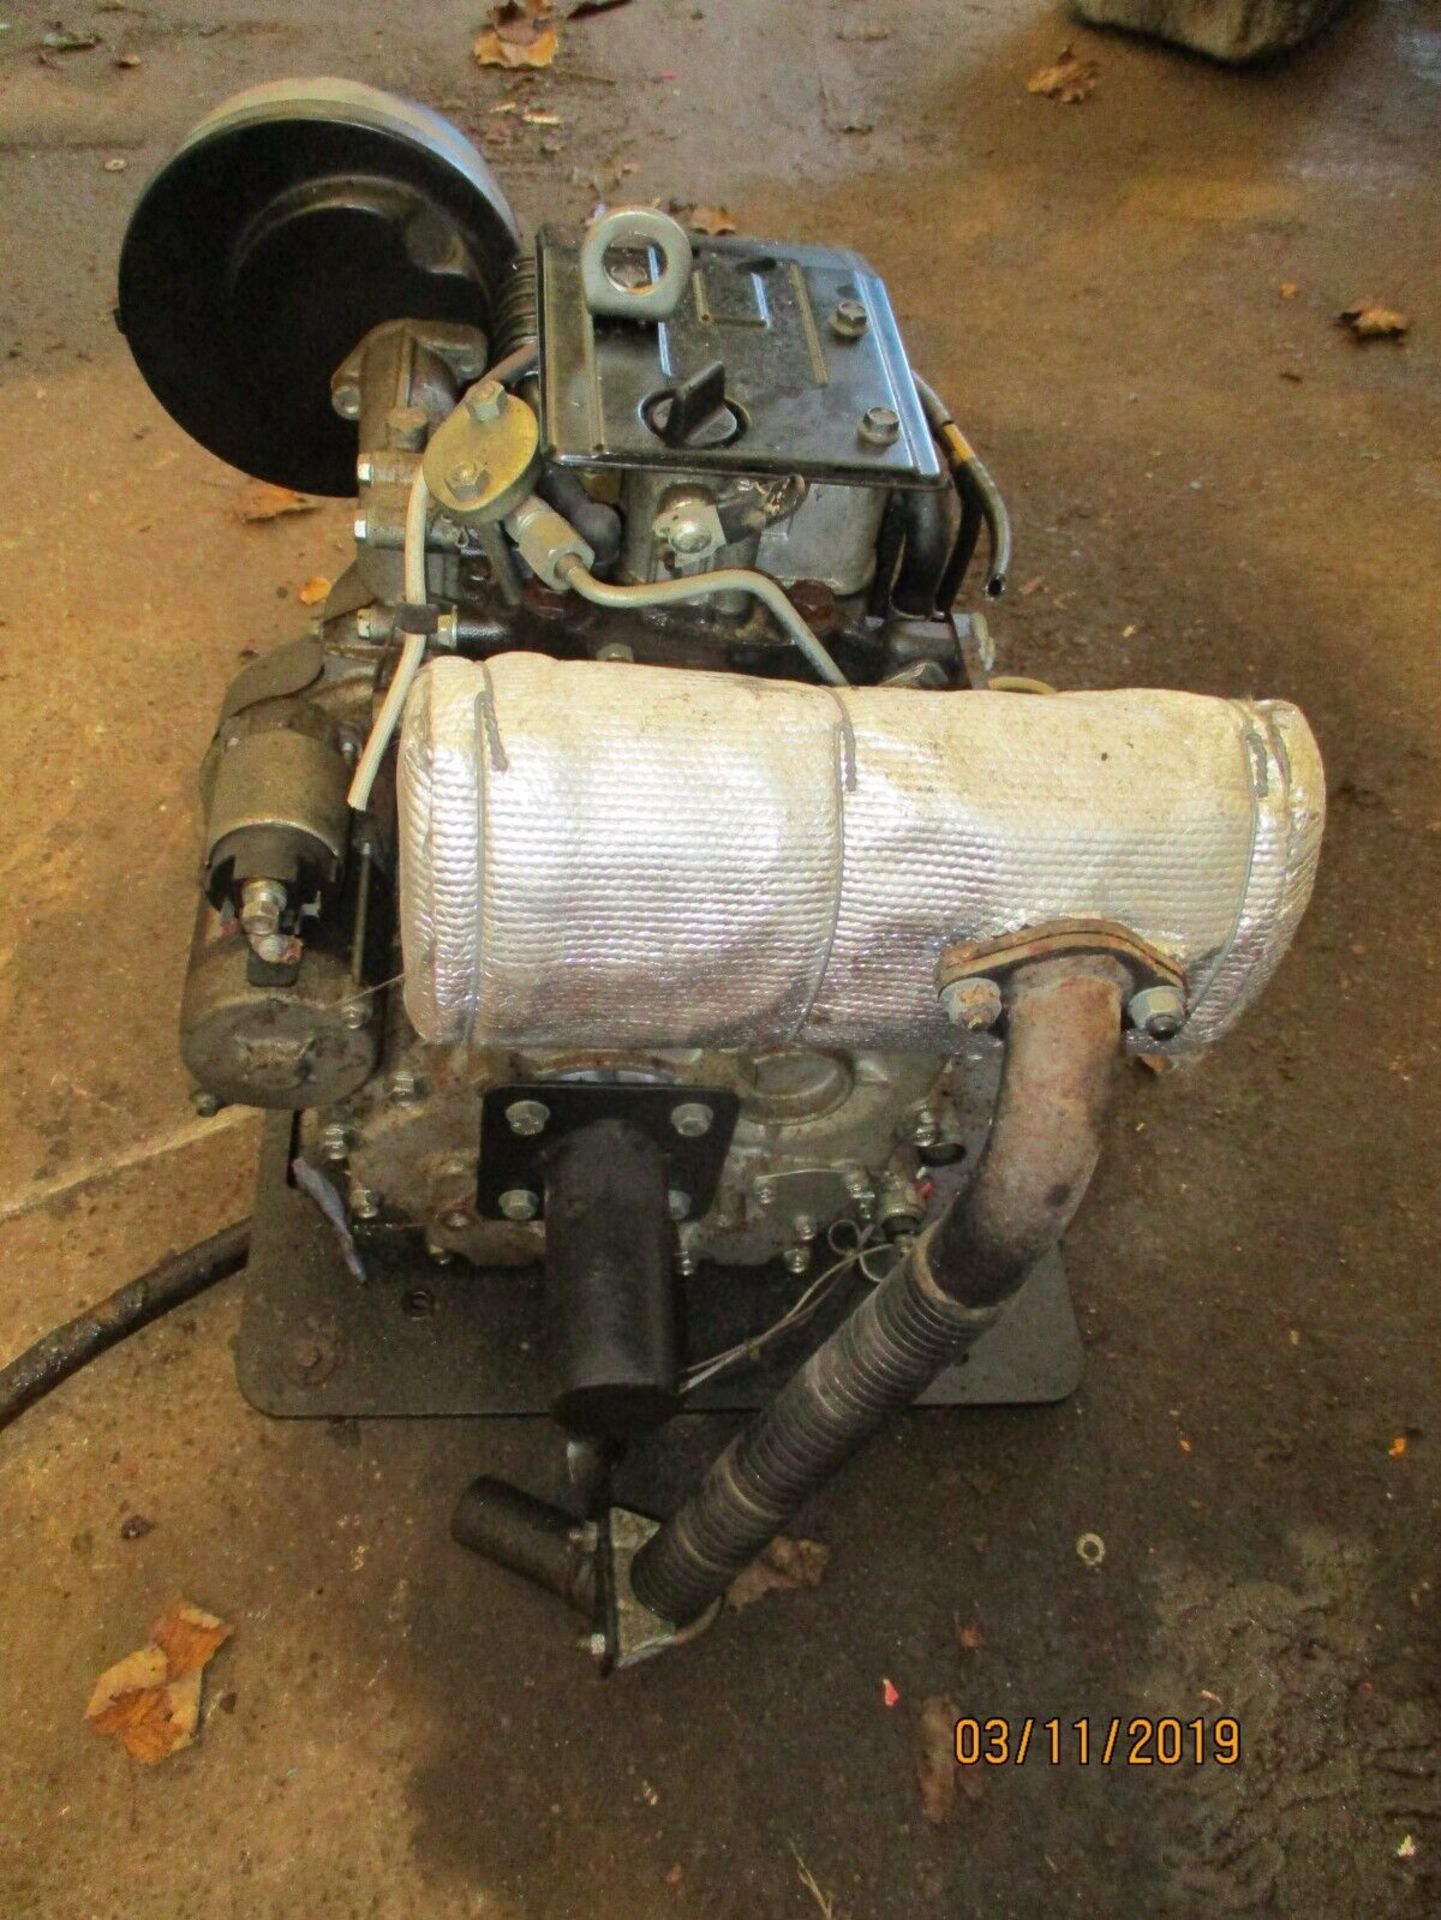 ENGINE KUBOTA OC60 - Image 4 of 4